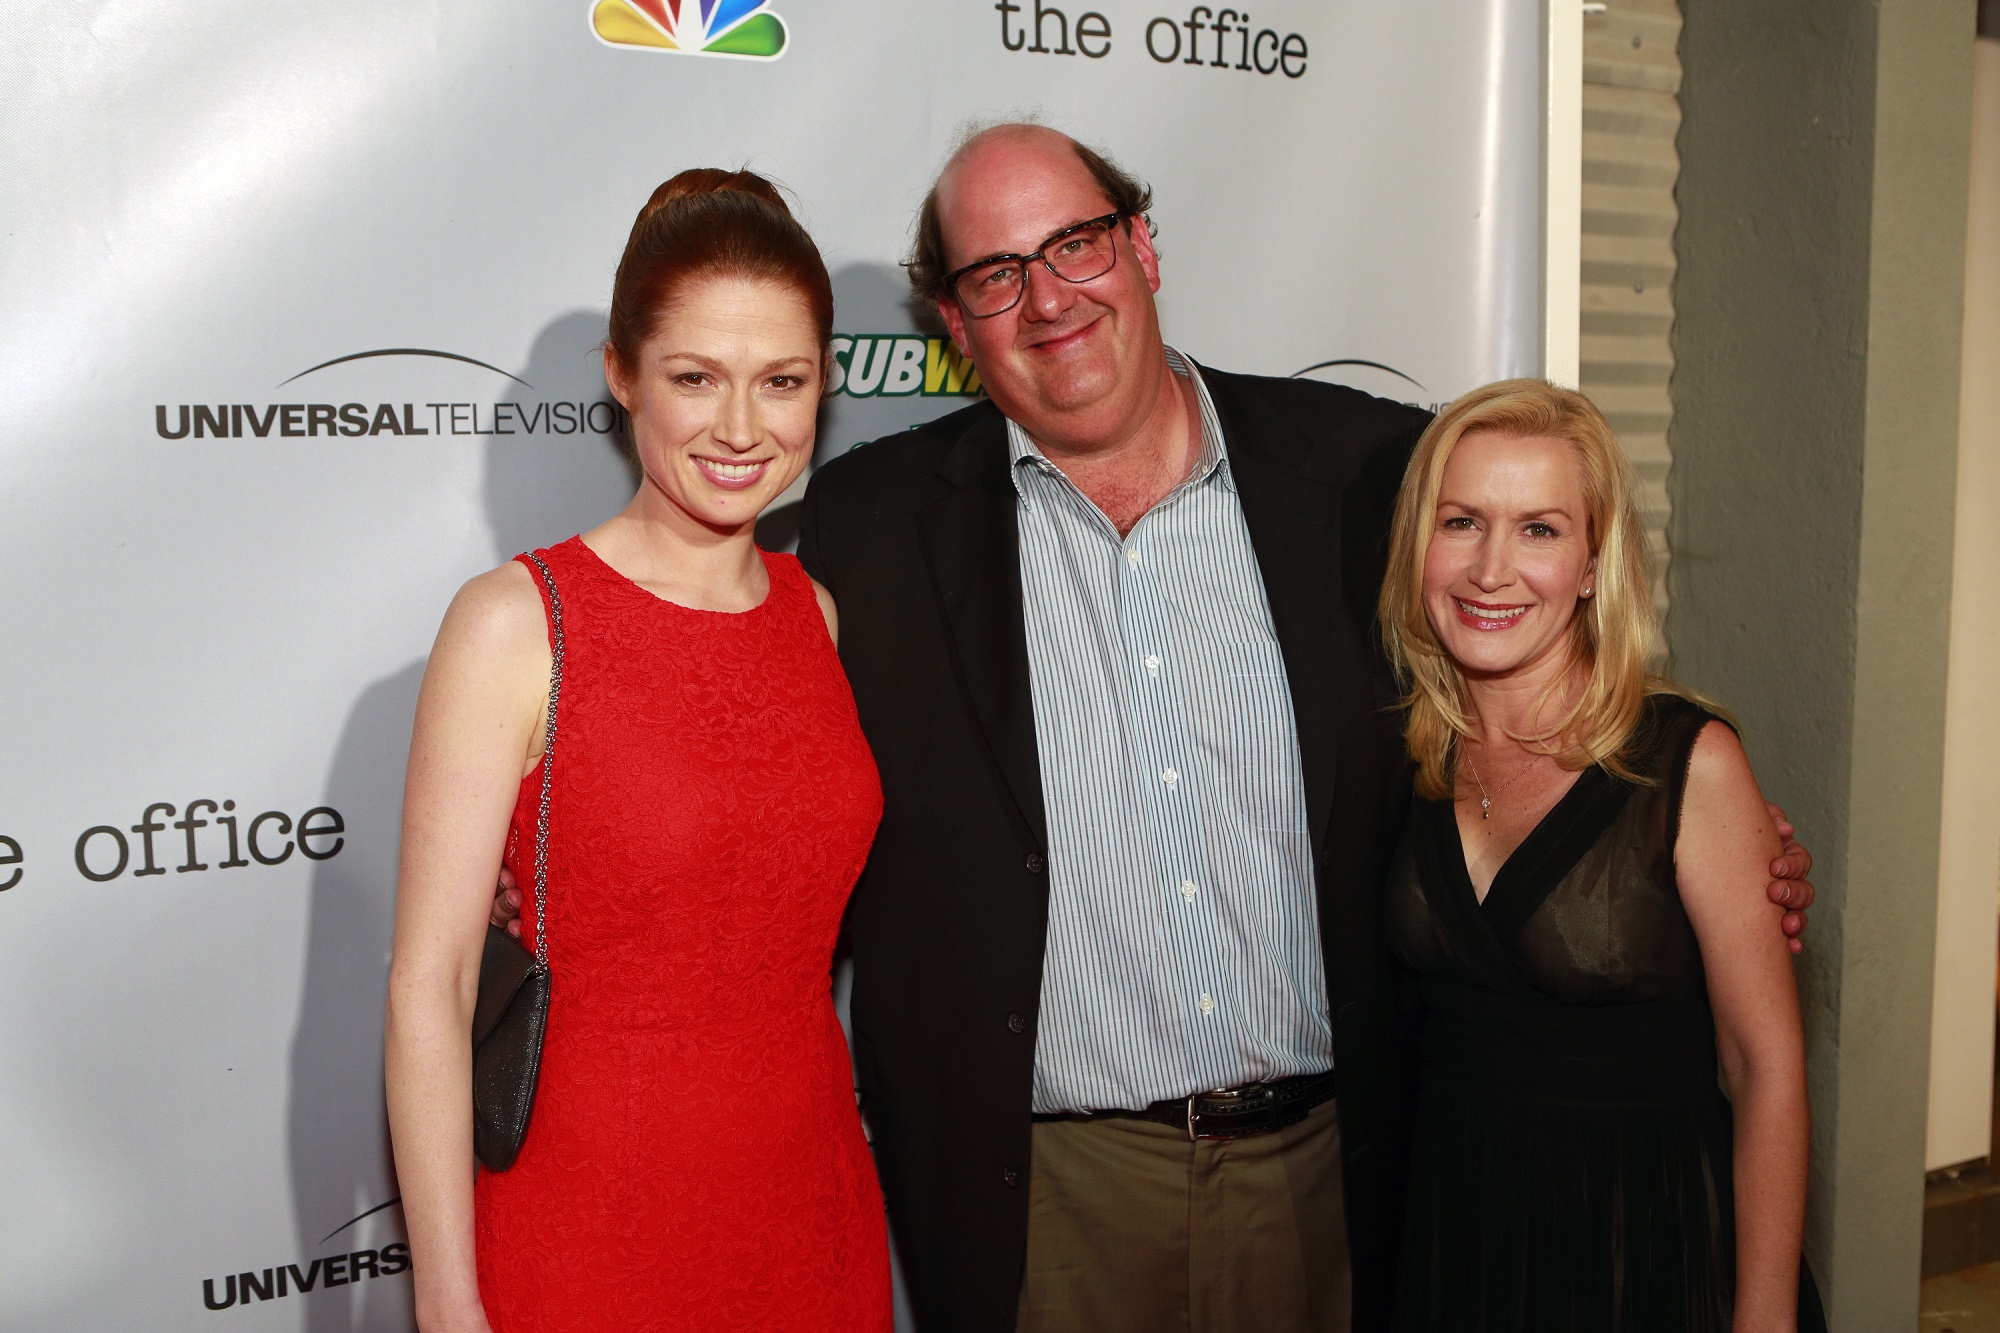 Ellie Kemper, Brian Baumgartner, and Angela Kinsey of The Office